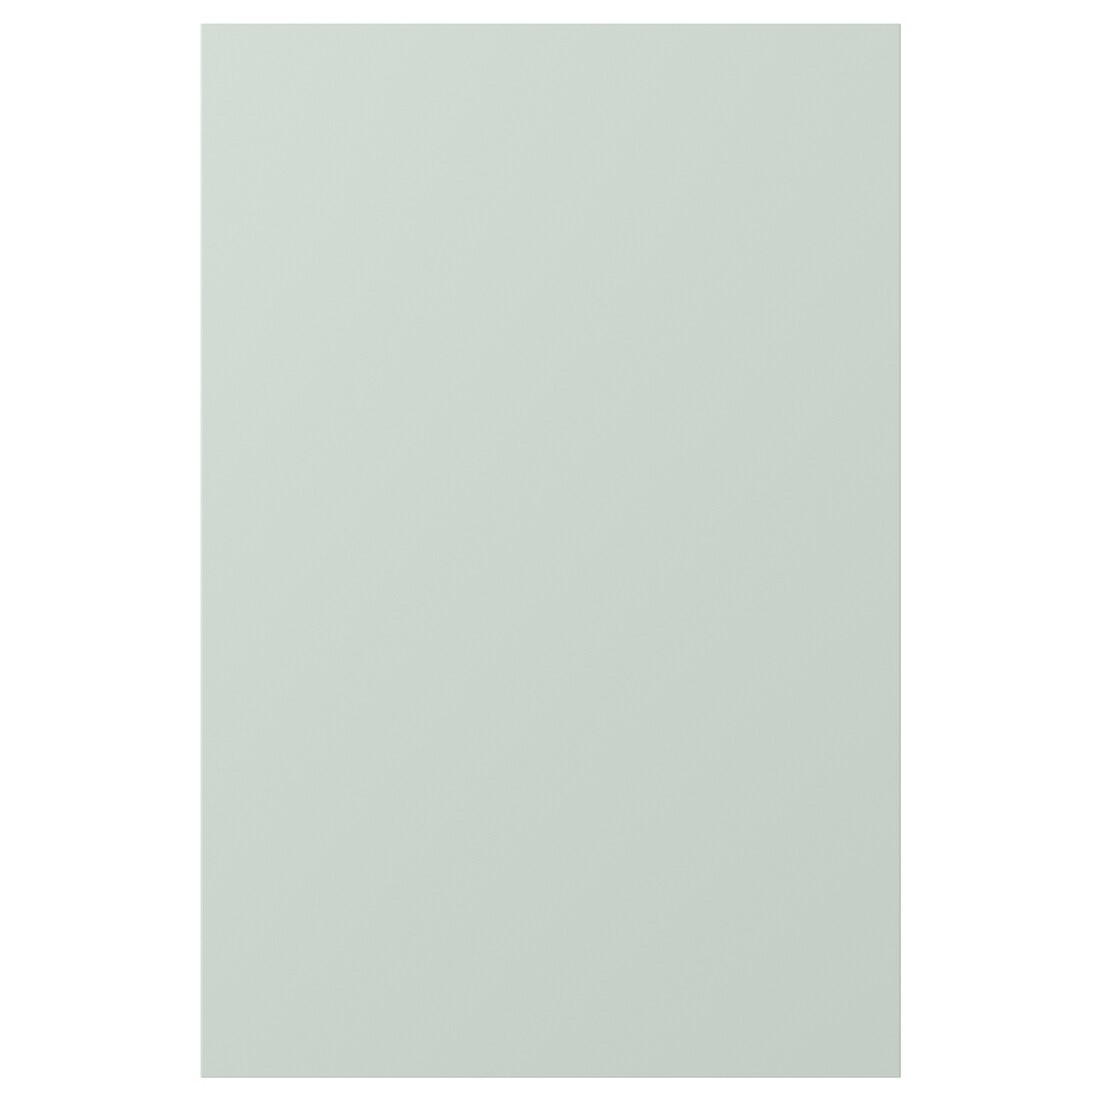 ENHET ЭНХЕТ Дверь, бледно-серо-зеленый, 40x60 см